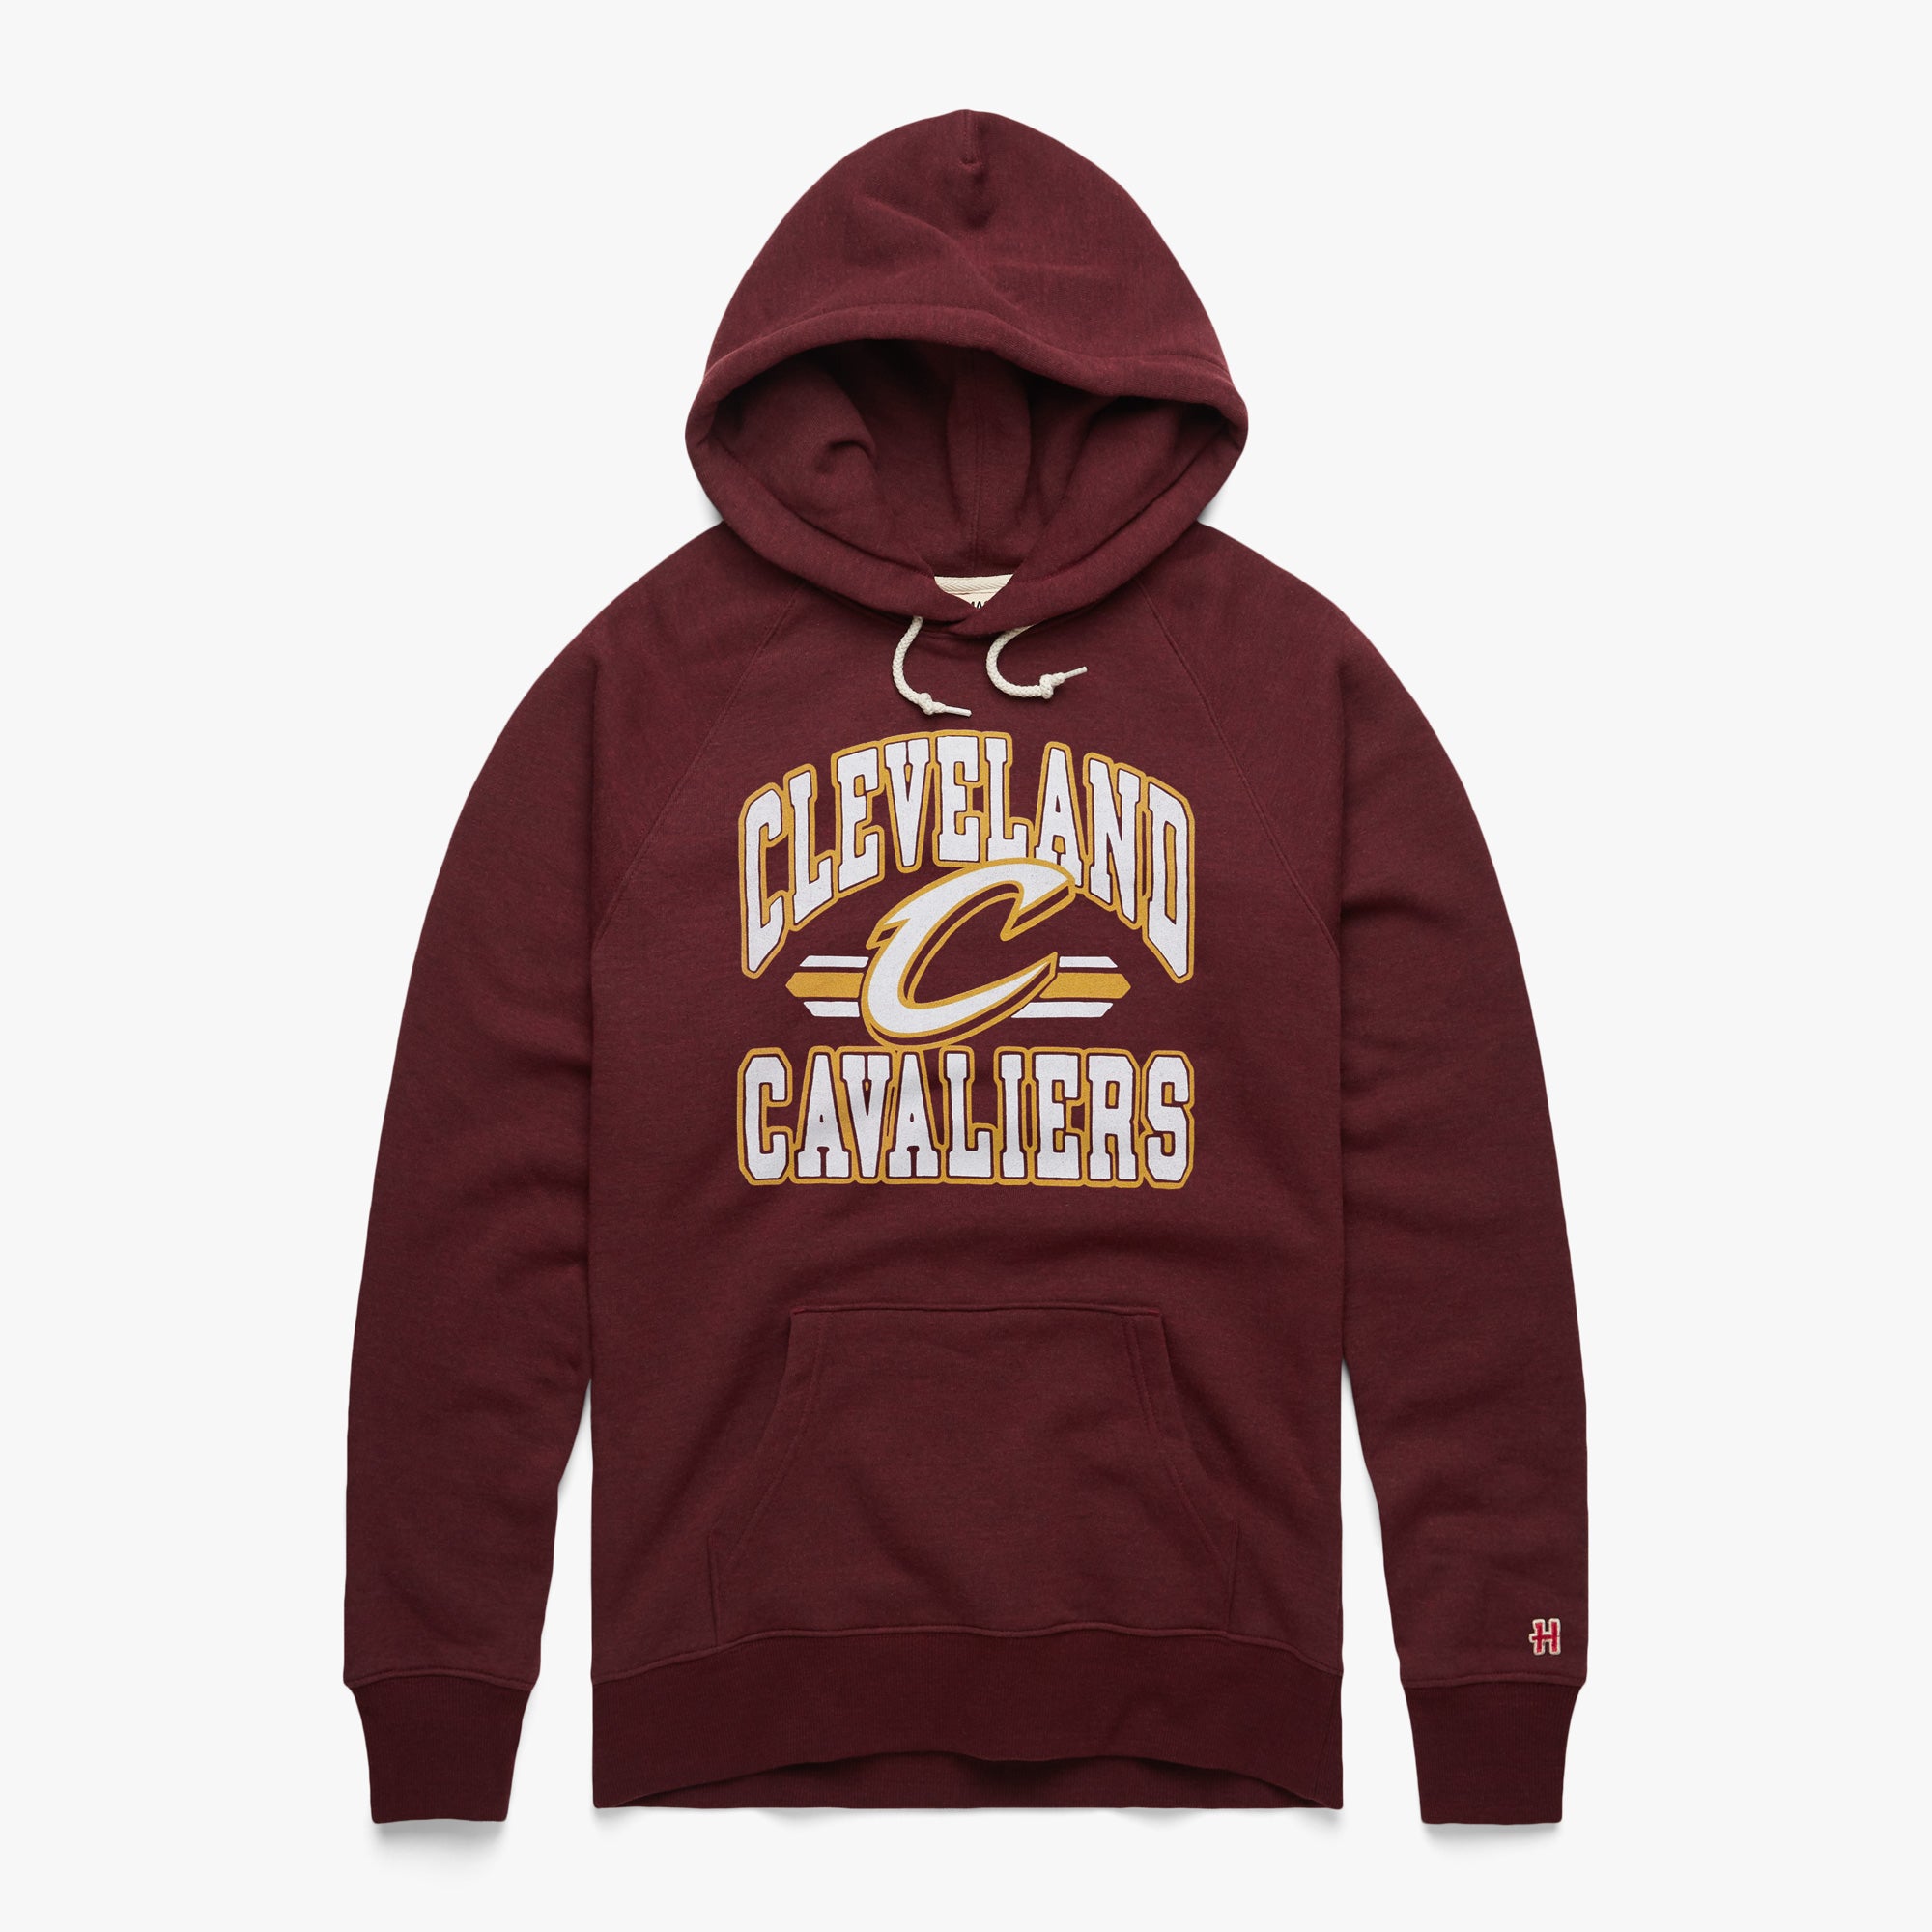 Cleveland Cavaliers Cavs Splattered Short Sleeve Sweatshirt Hoodie